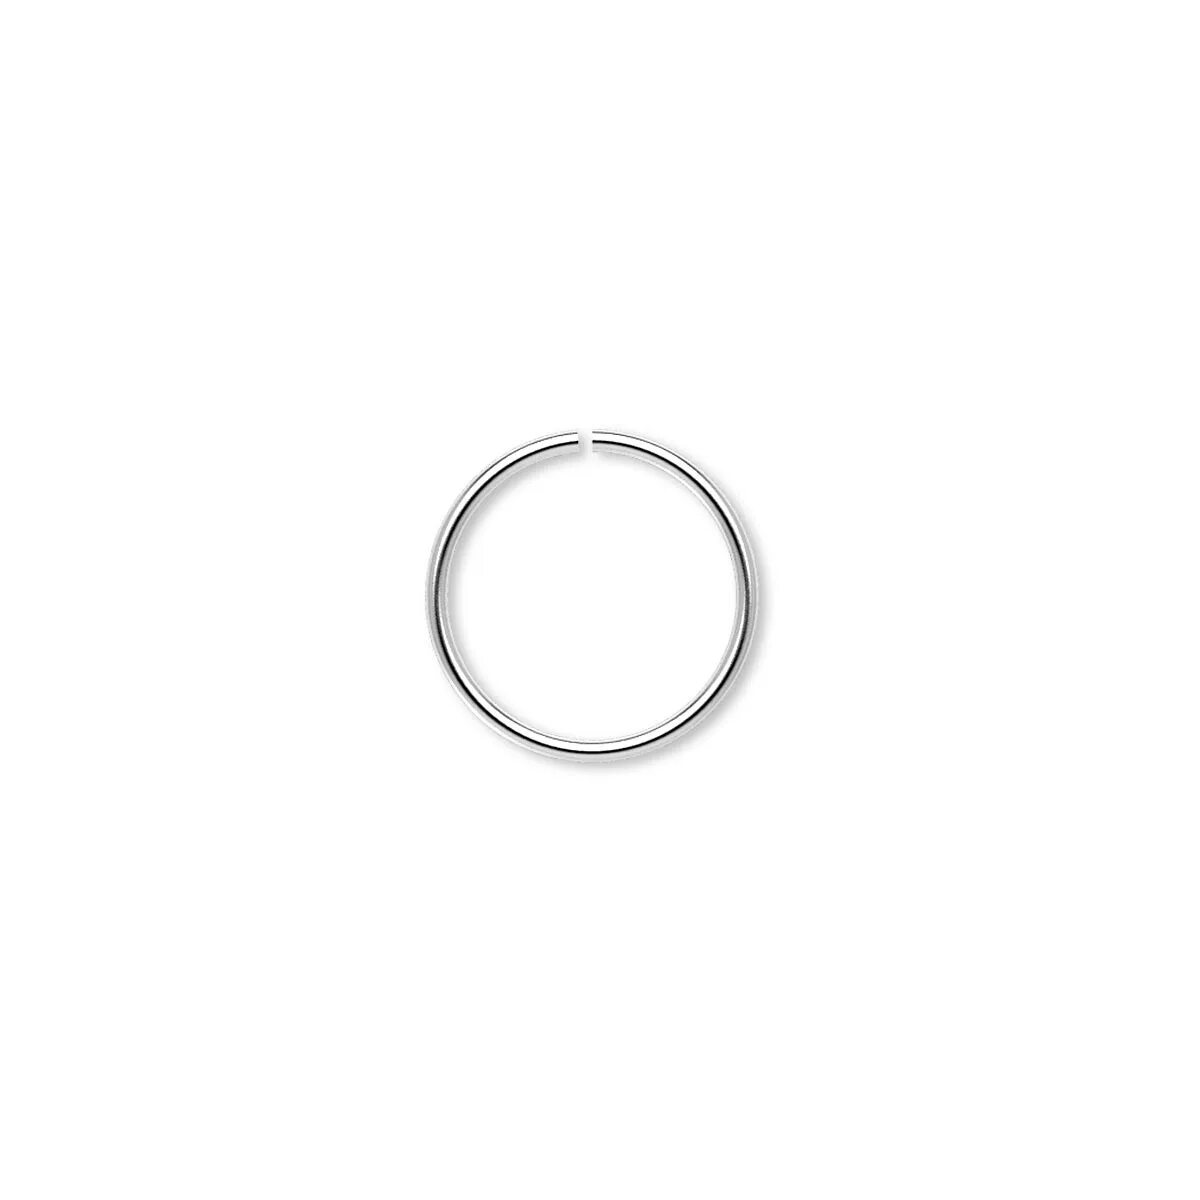 45 65 10. Стальное кольцо. Кольцо соединительное. Кольцо соединительное для бижутерии серебро. Хромированное кольцо для фотошопа.